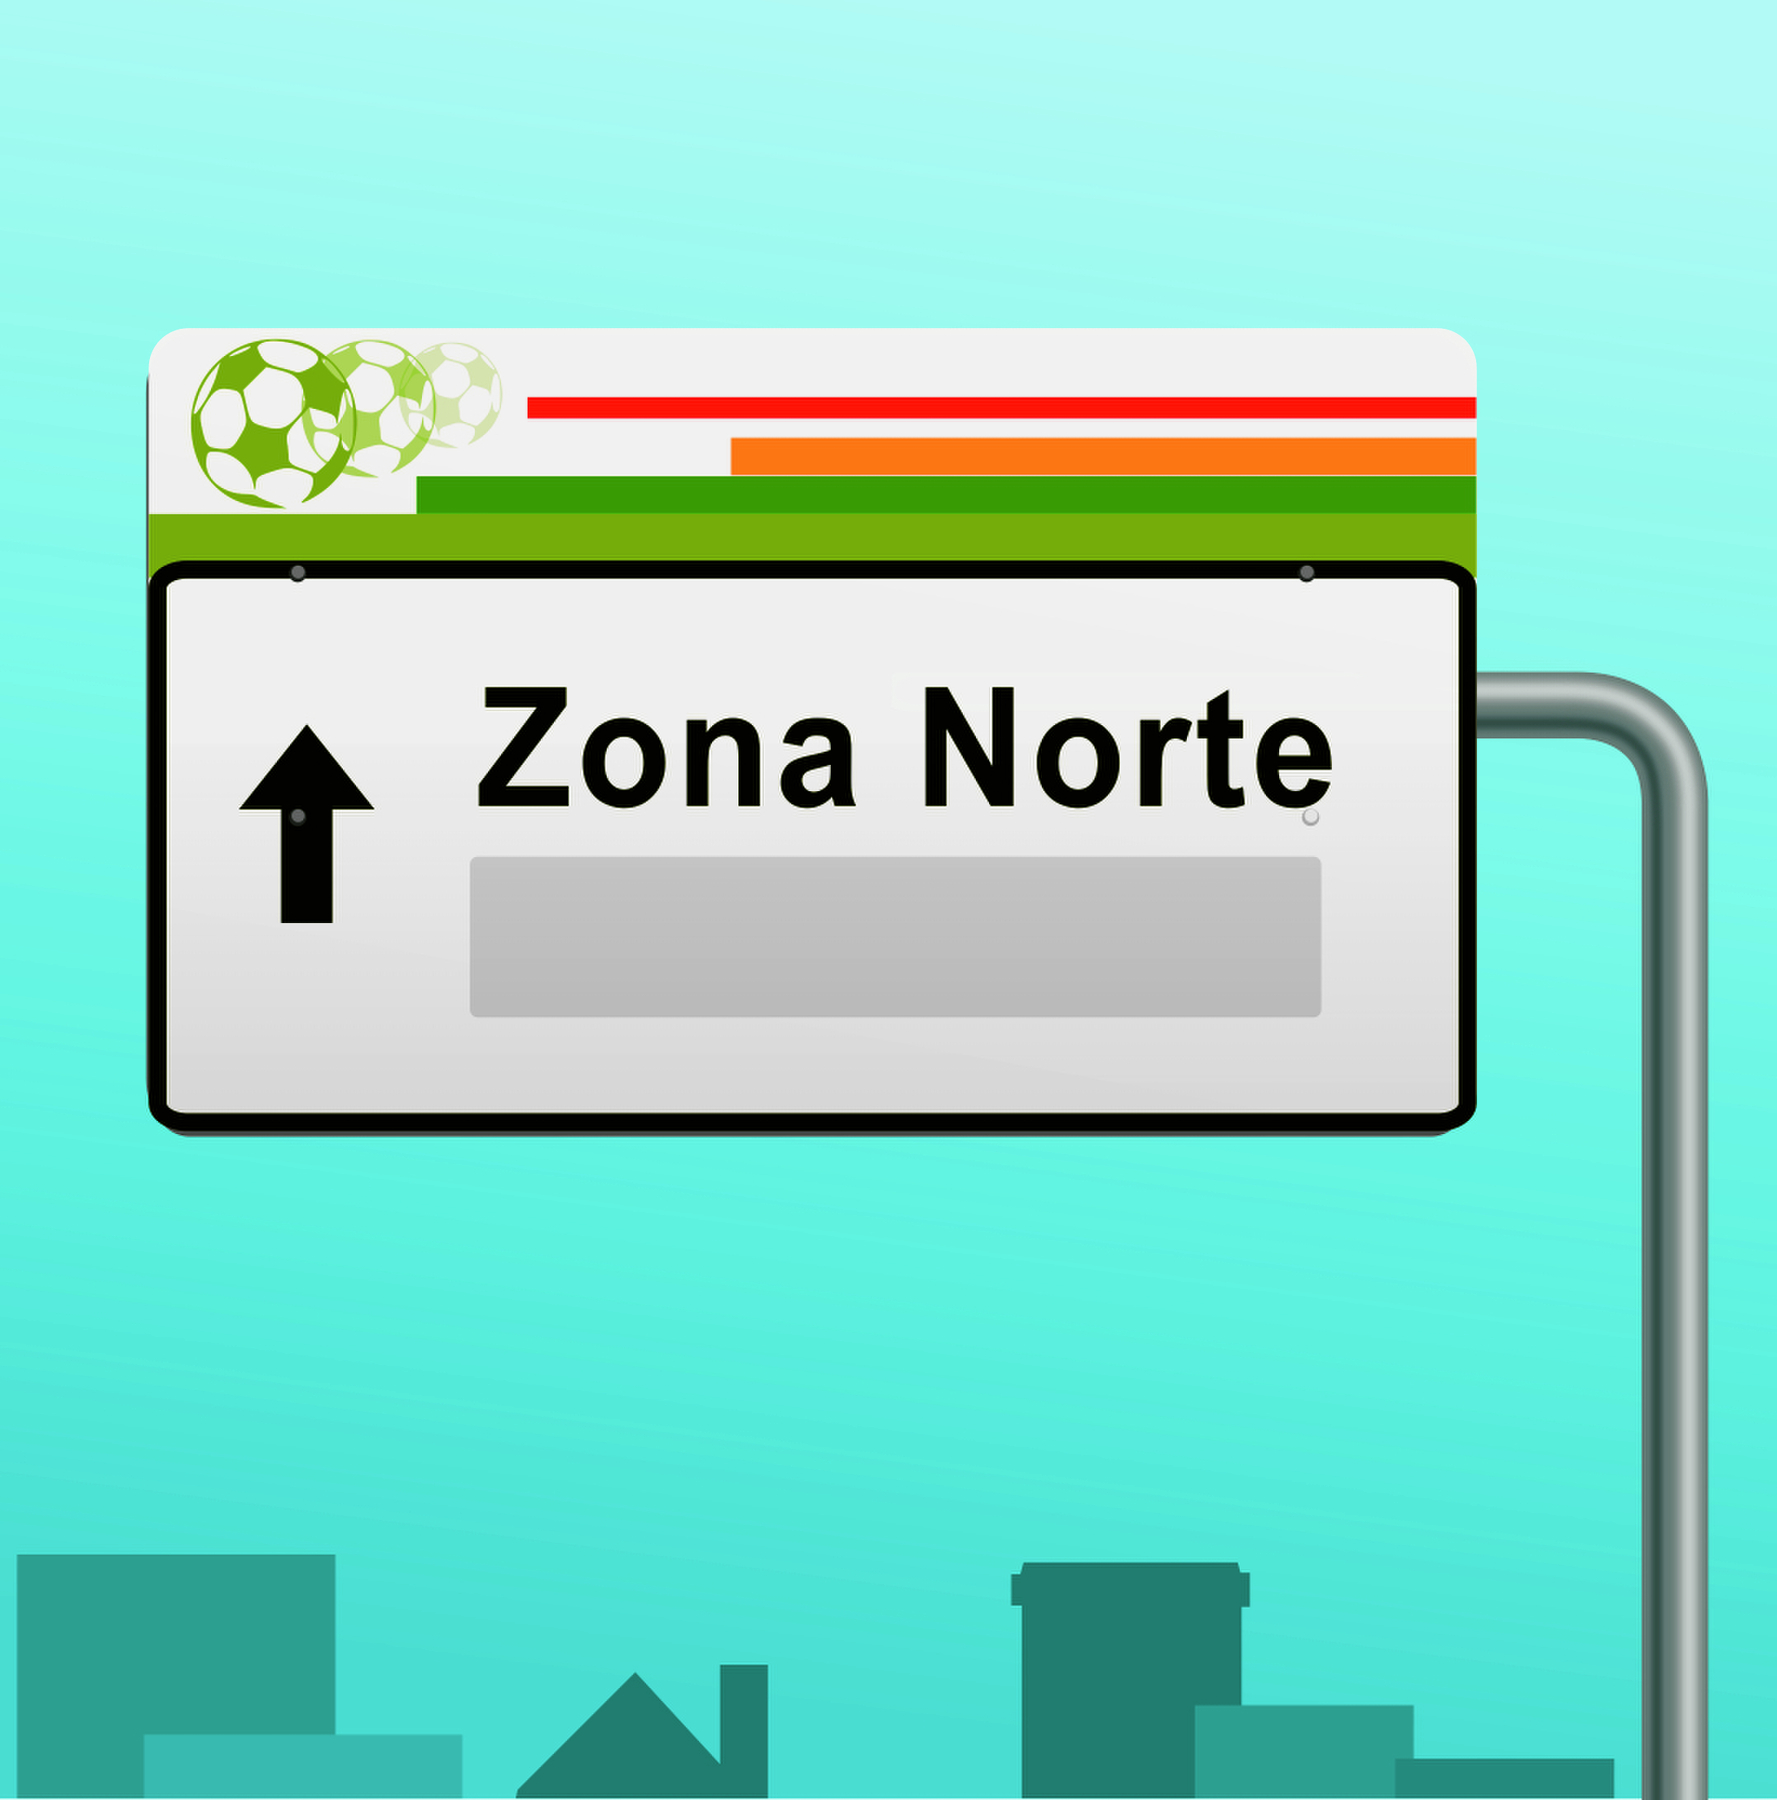 Ilustração. Placa cinza com seta para cima, bola de futebol em verde e listras à direita em laranja e verde. Texto: Zona norte. Espaço para resposta.